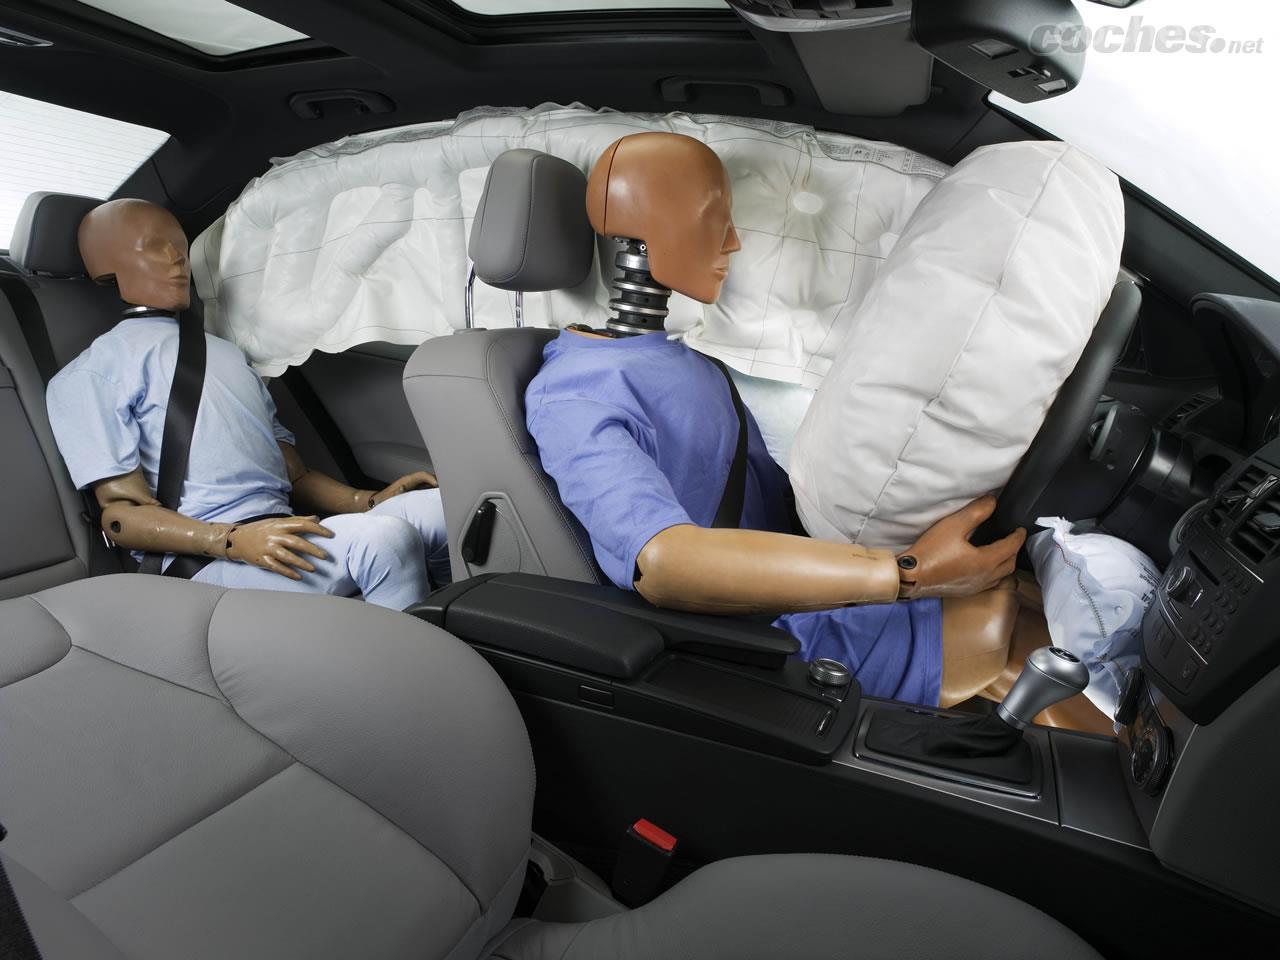 Disipación crimen mago Cinturón, airbag, reposacabezas: claves para reducir las lesiones |  Noticias Coches.net